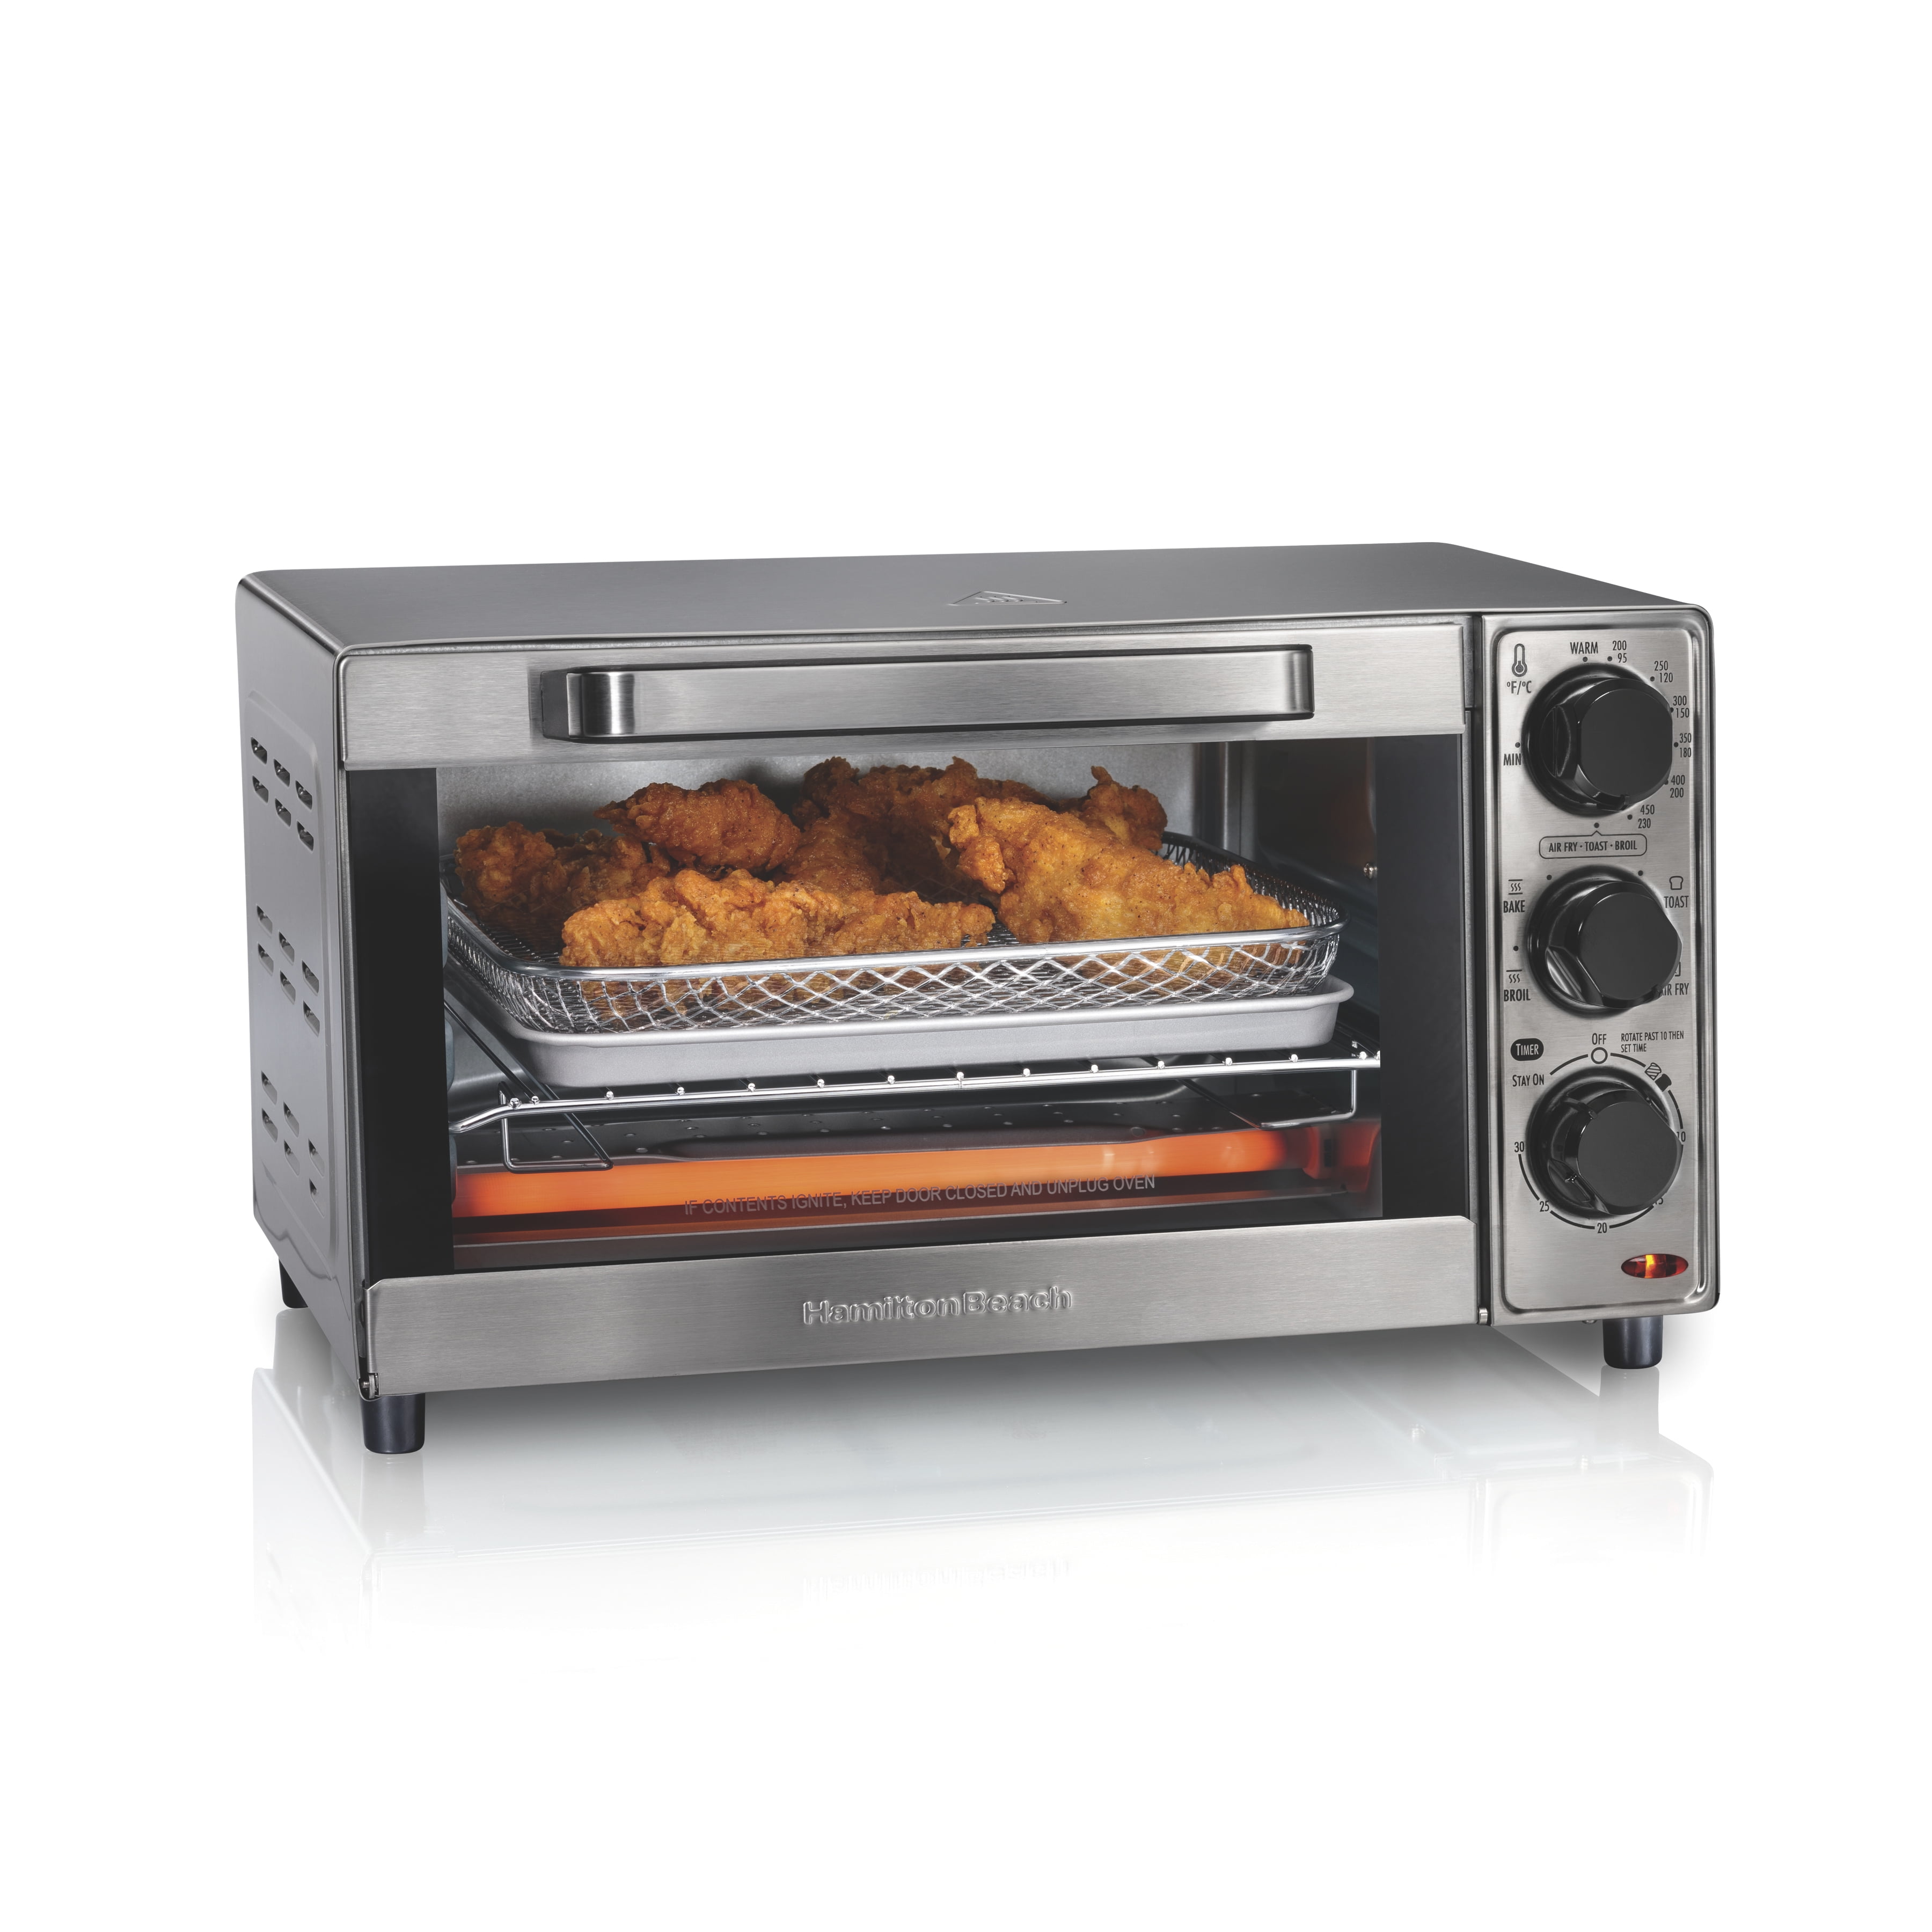 Hamilton Beach 4-slice Toaster Oven